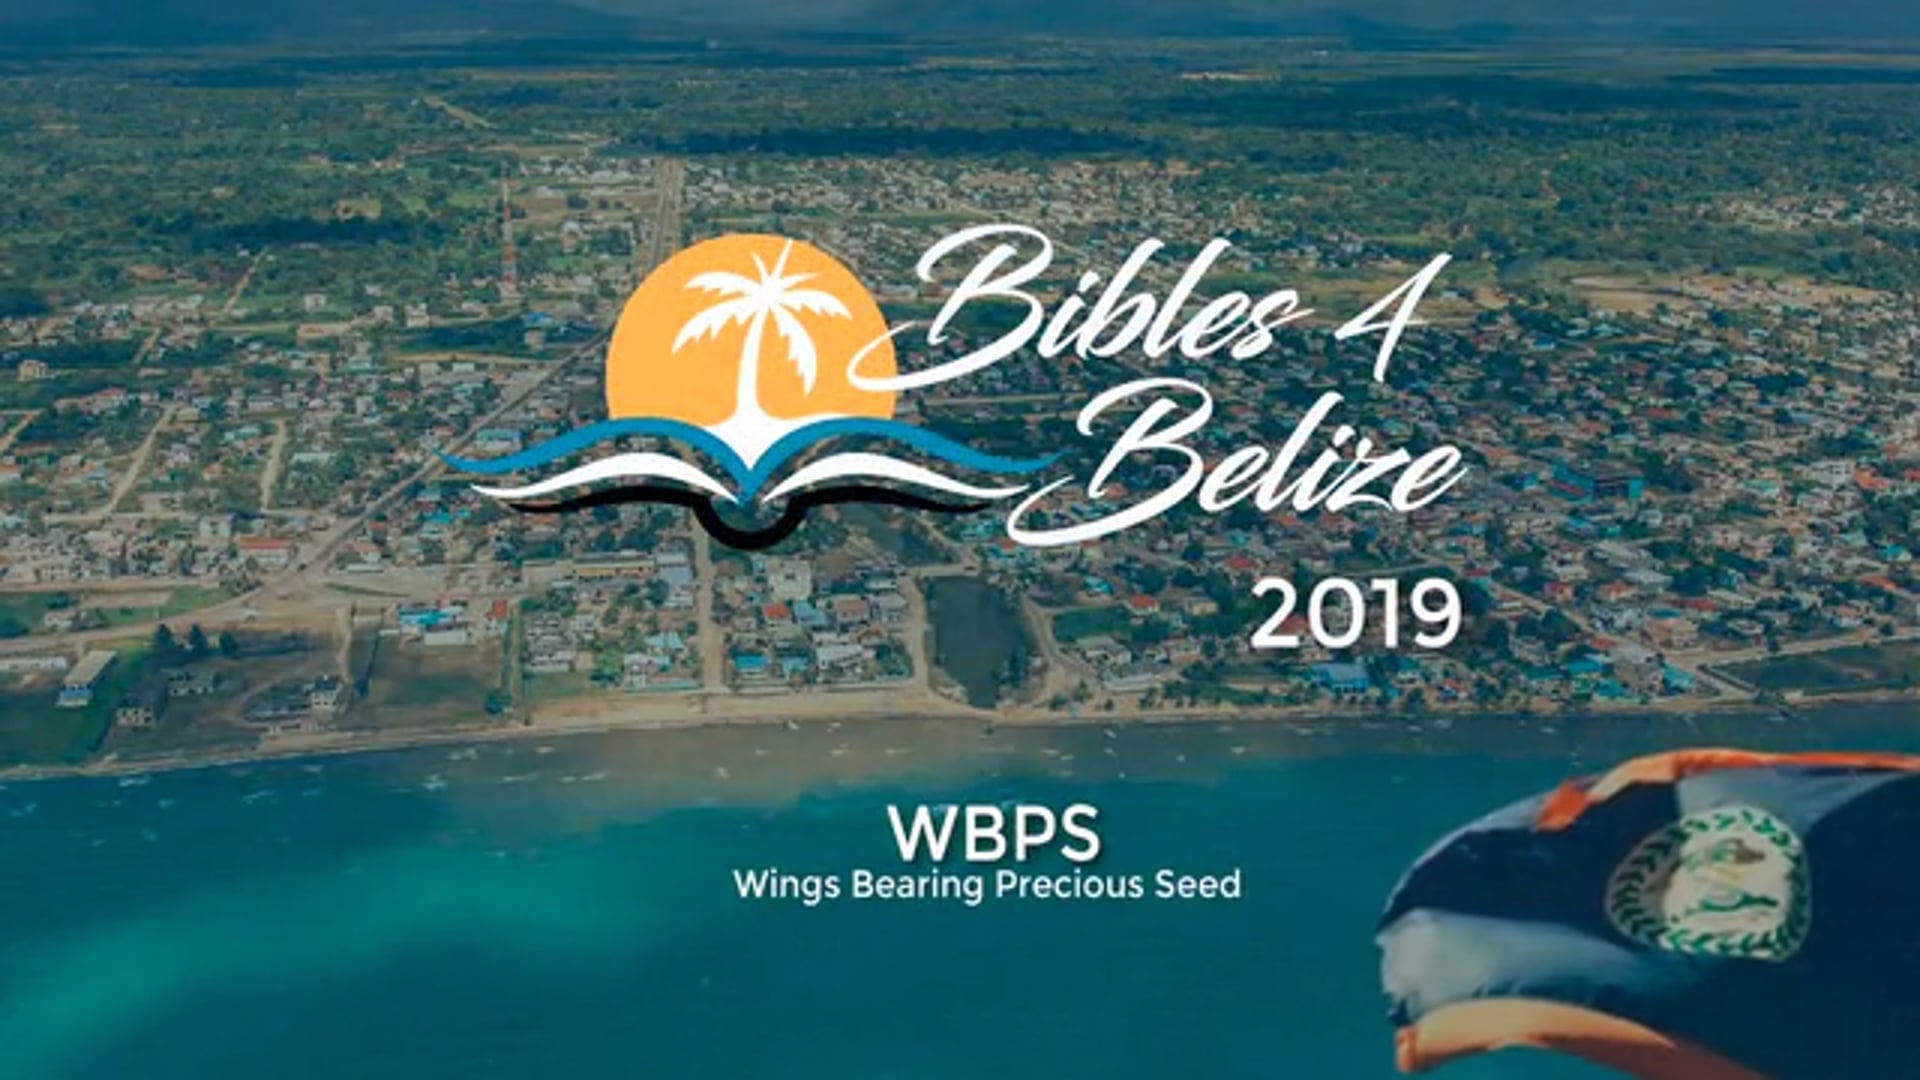 Bibles 4 Belize 2019